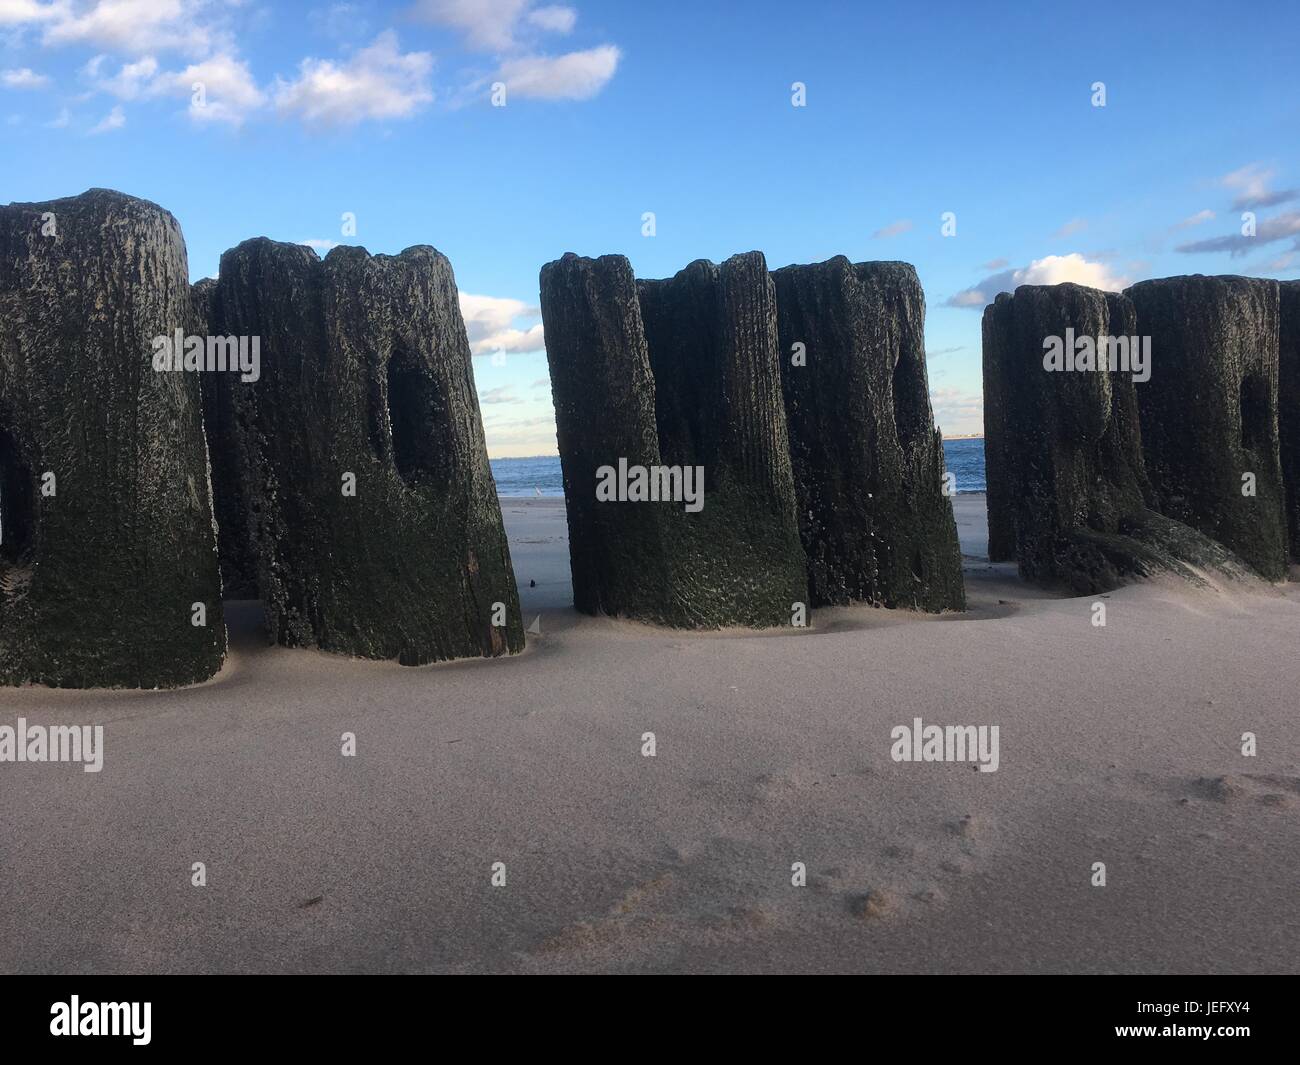 Silhouette di weathered posti di legno, i resti del molo in legno a Coney Island, New York. Spiaggia di sabbia e resti di legno del molo. Foto Stock